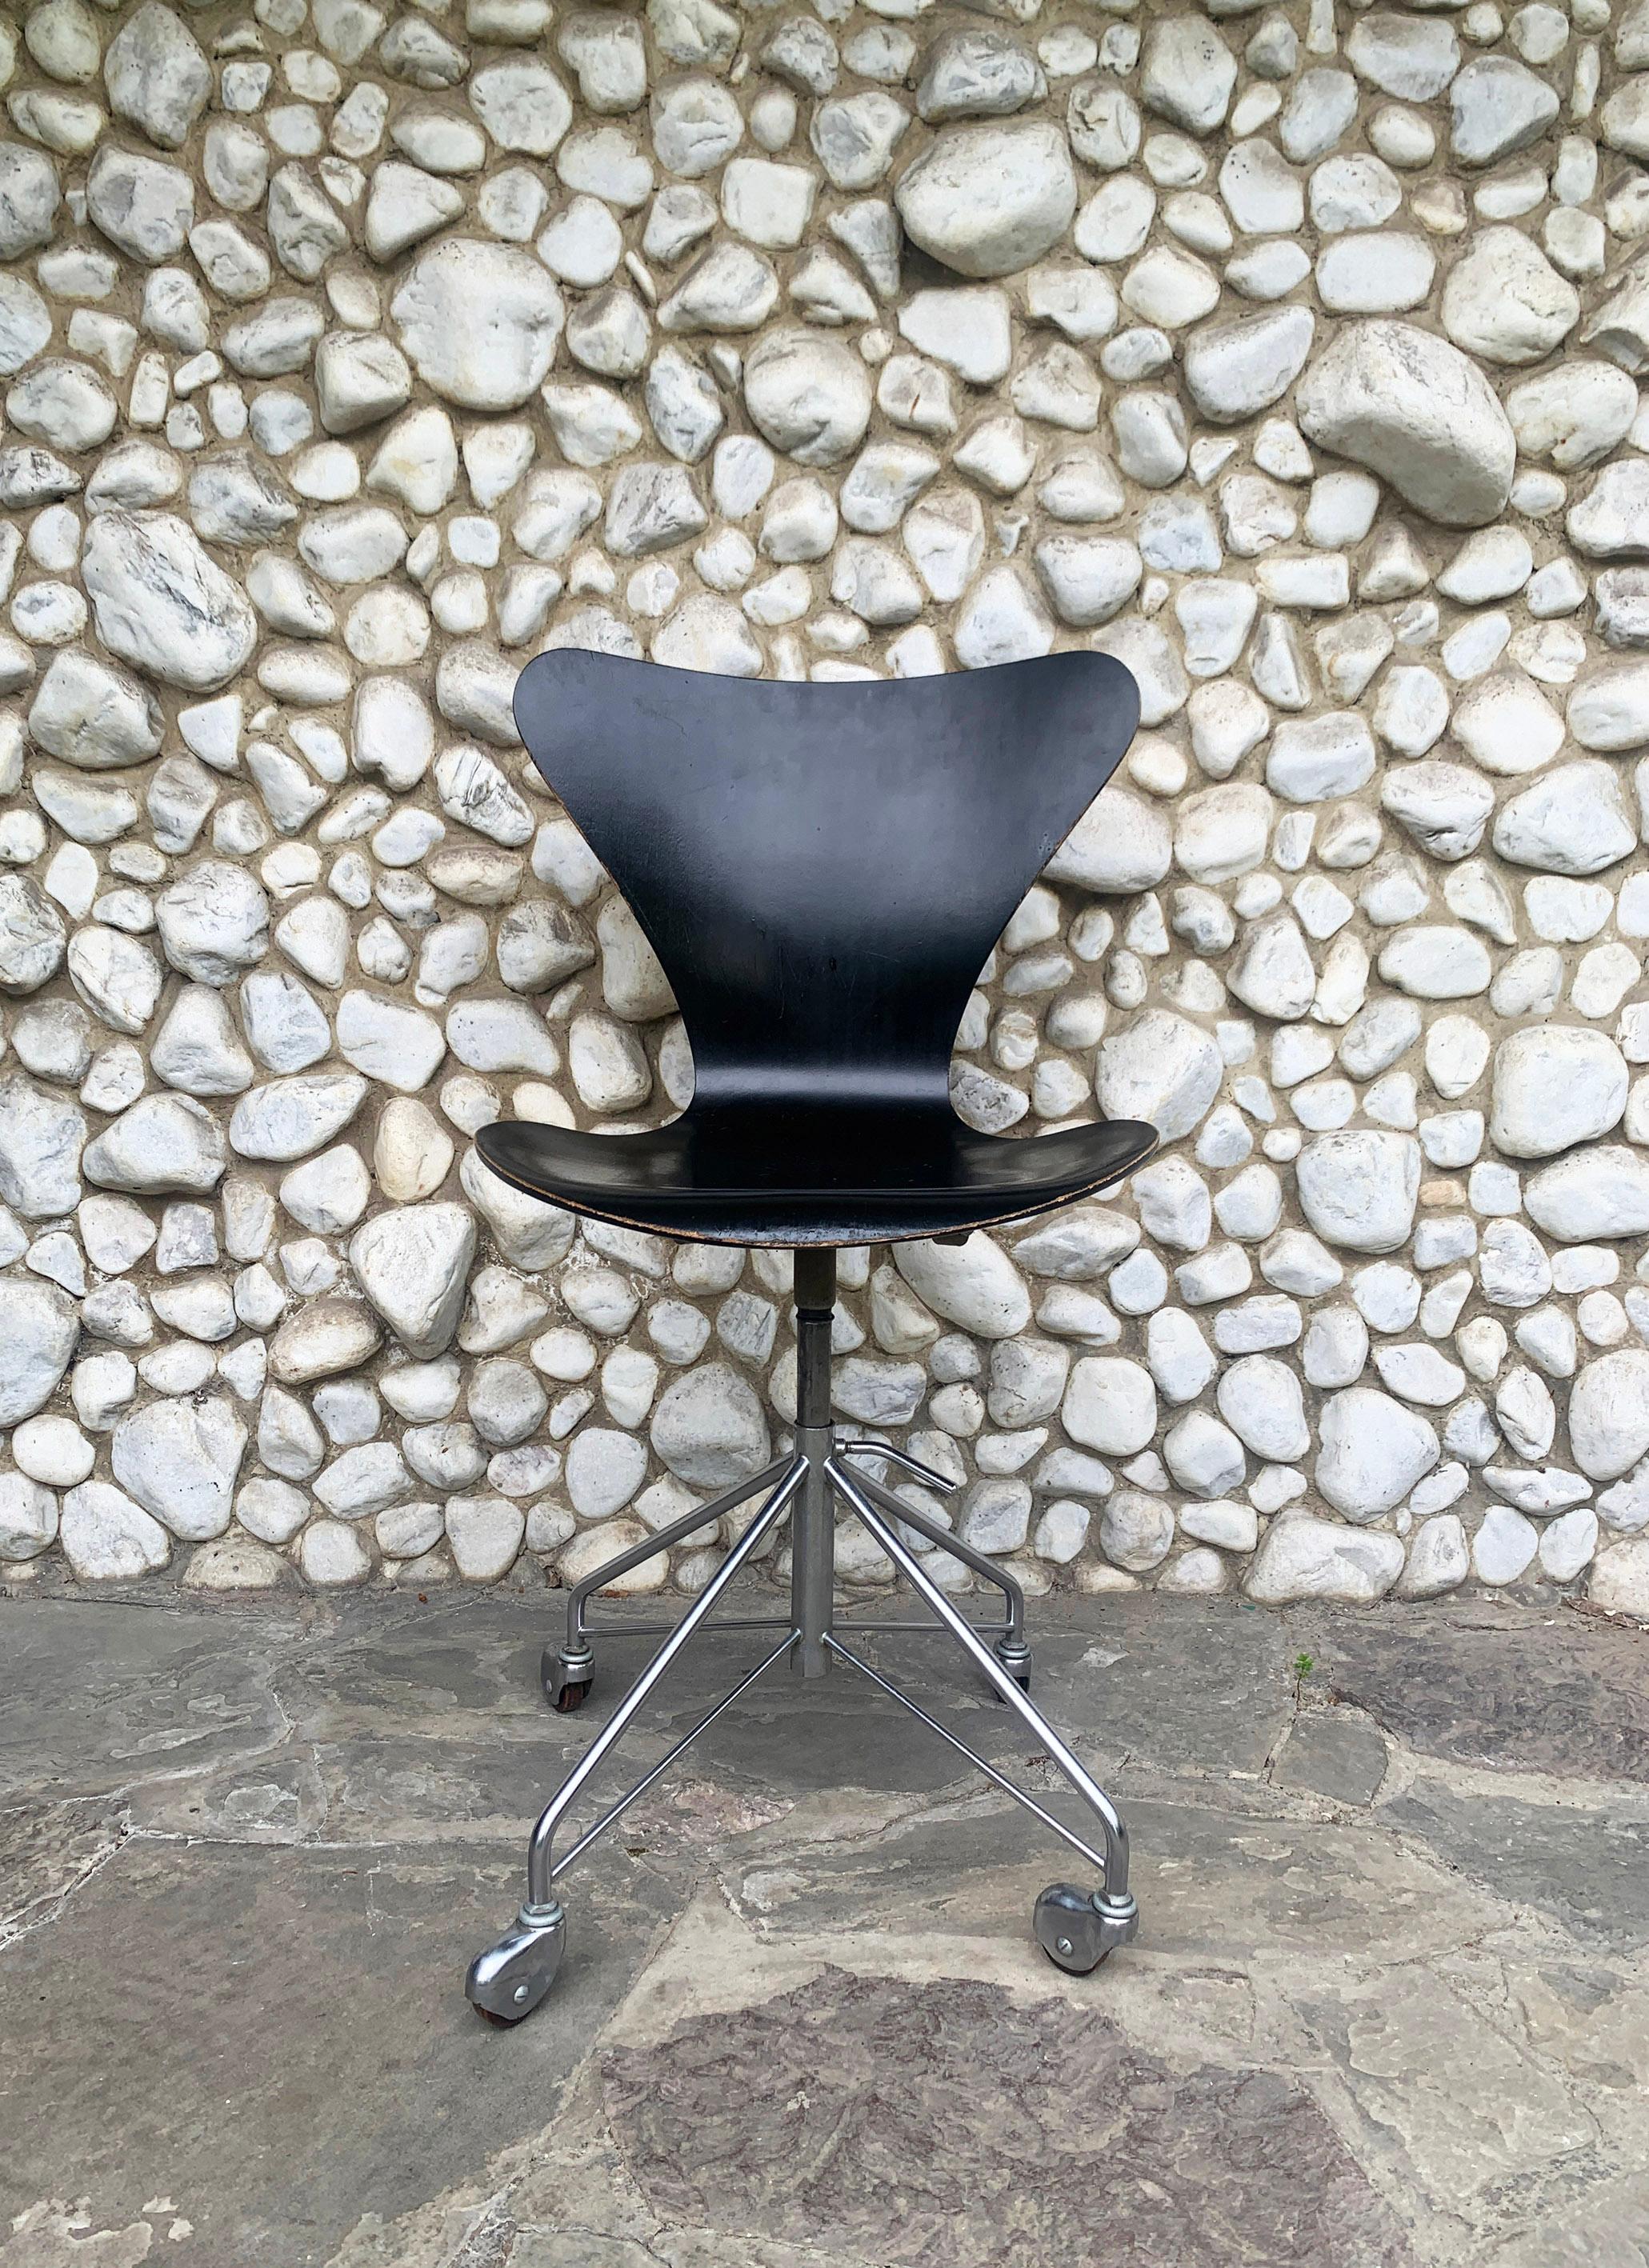 Drehstuhl Modell 3117 aus schwarzem Sperrholz. Nach dem Vorbild des Stuhls 3107 von Arne Jacobsen aus dem Jahr 1955. 

Produziert von Fritz Hansen, Dänemark, im Januar 1965. 

Sitzhöhe einstellbar von 44cm bis 54cm. 

Sitz aus Sperrholz, schwarz